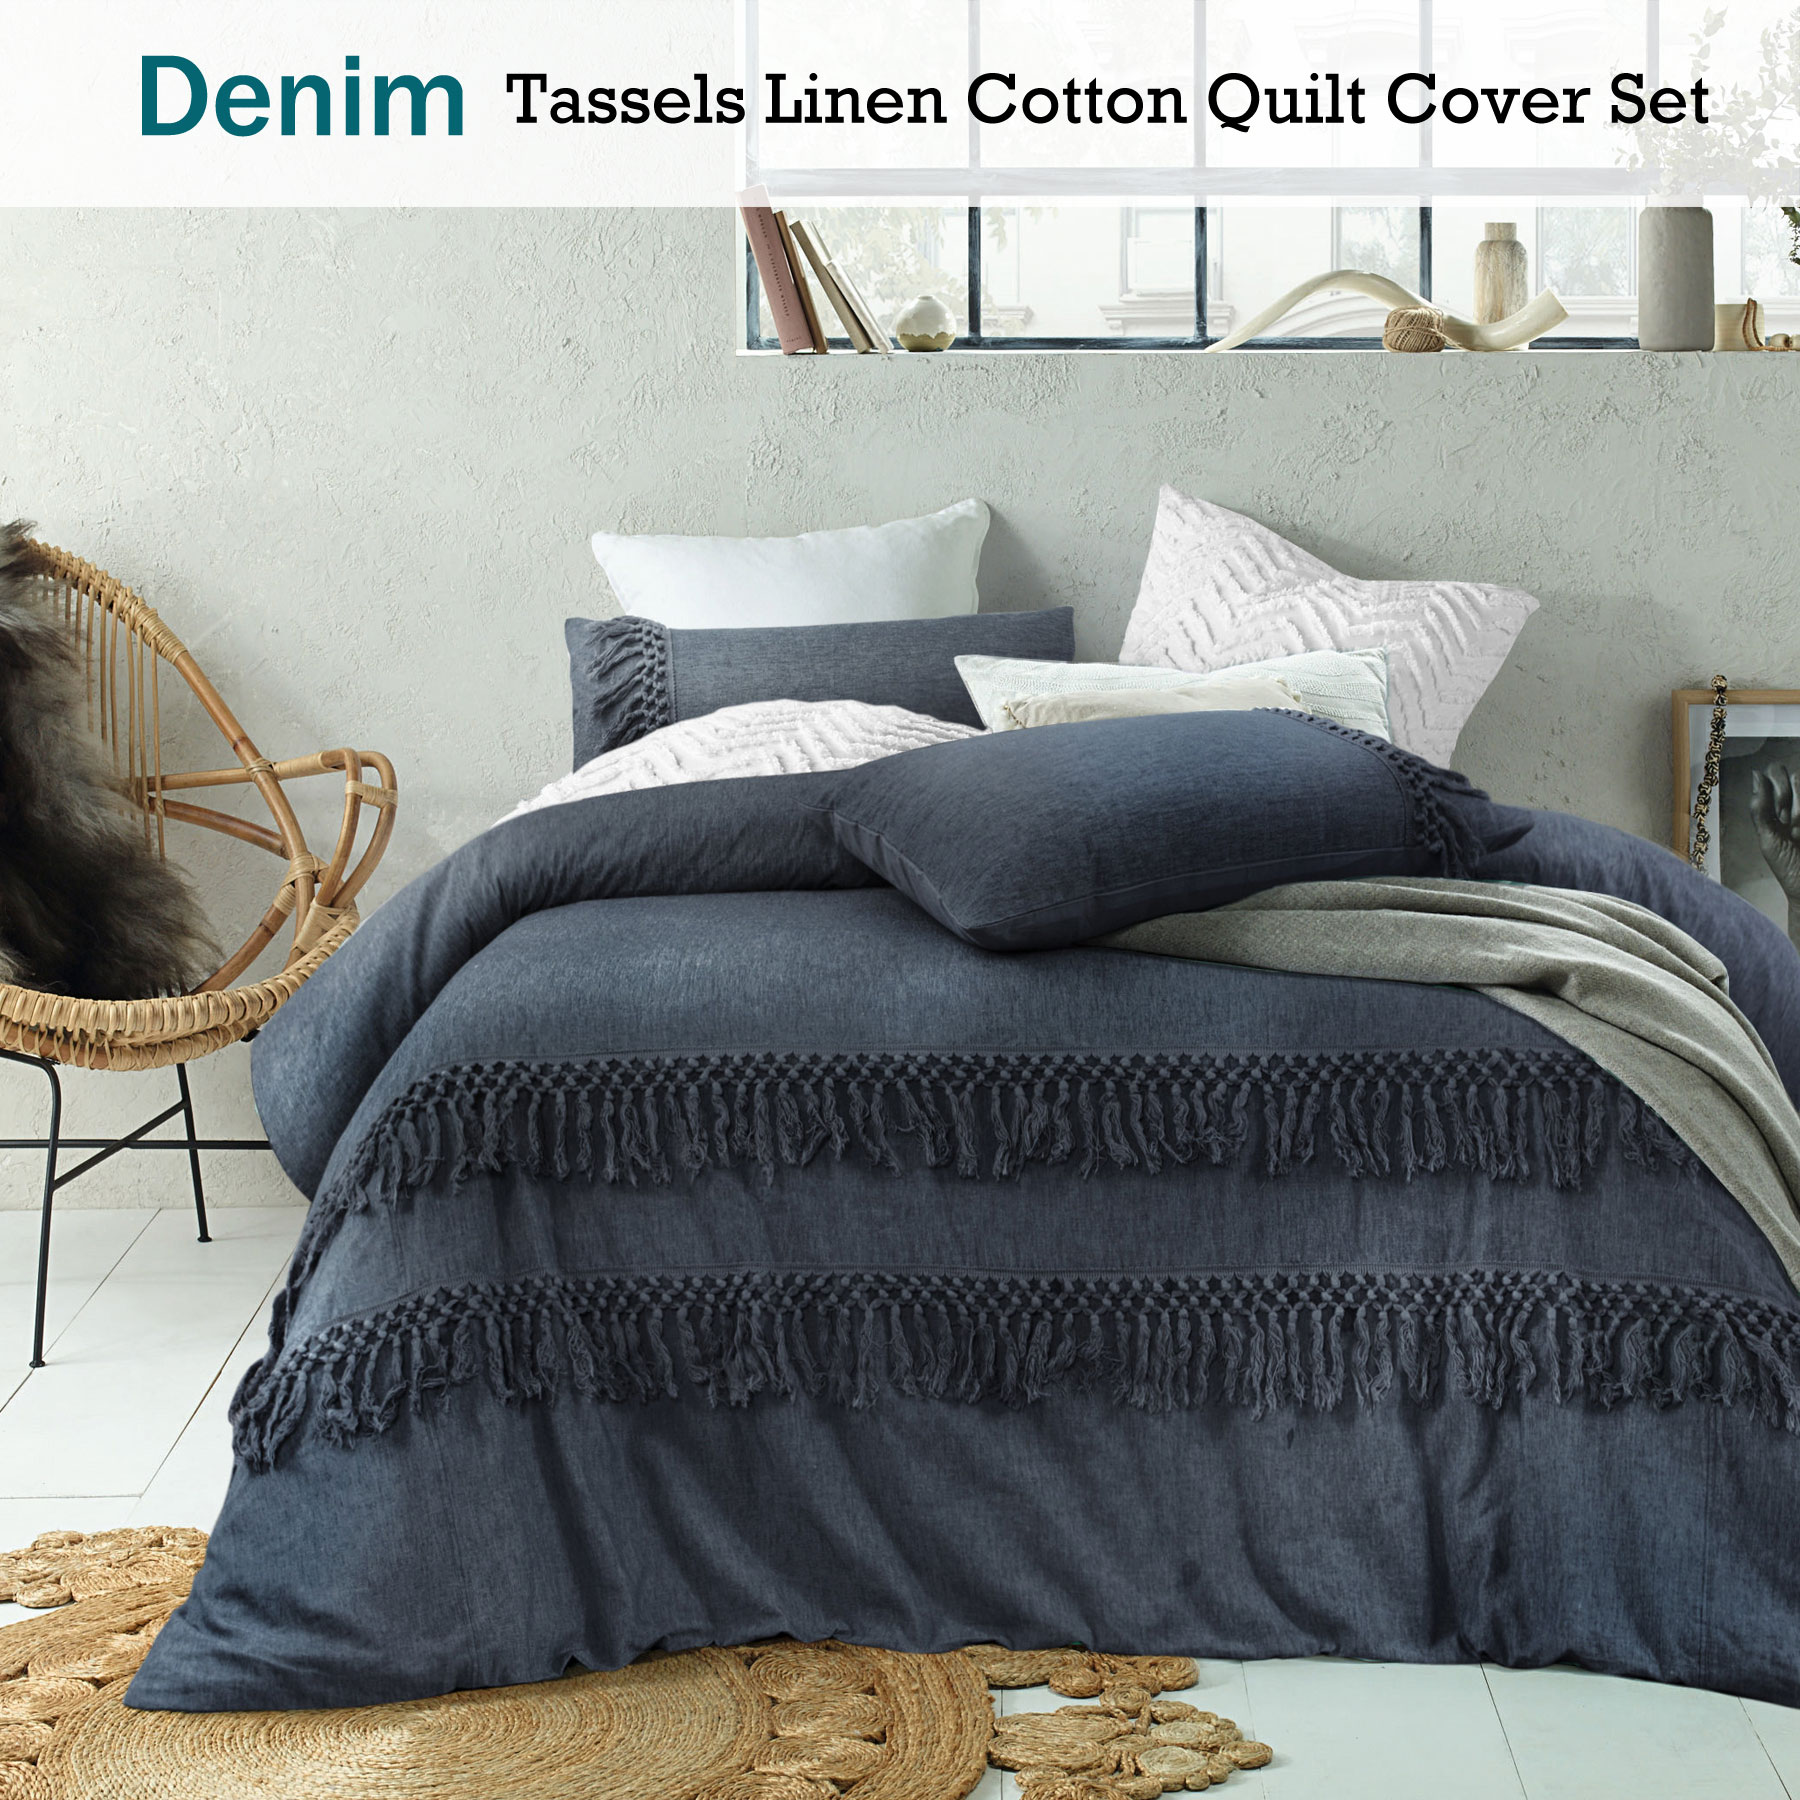 Denim Boho Tassel Linen Cotton Quilt Cover Set By Accessorize